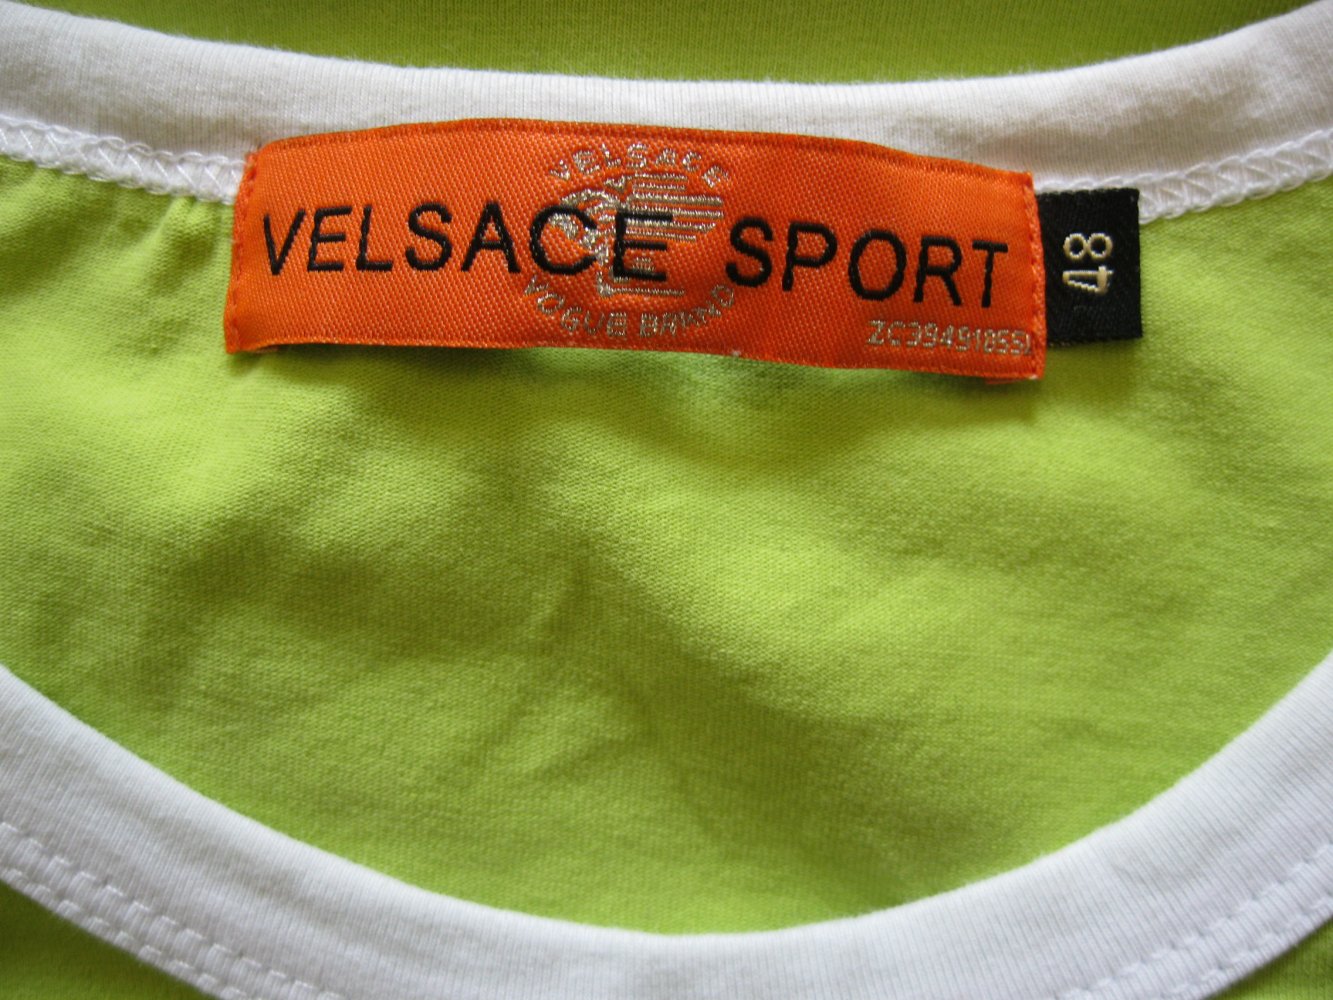 Velsace Sport T-Shirt Neongrün Stickerei 48 / 4XL